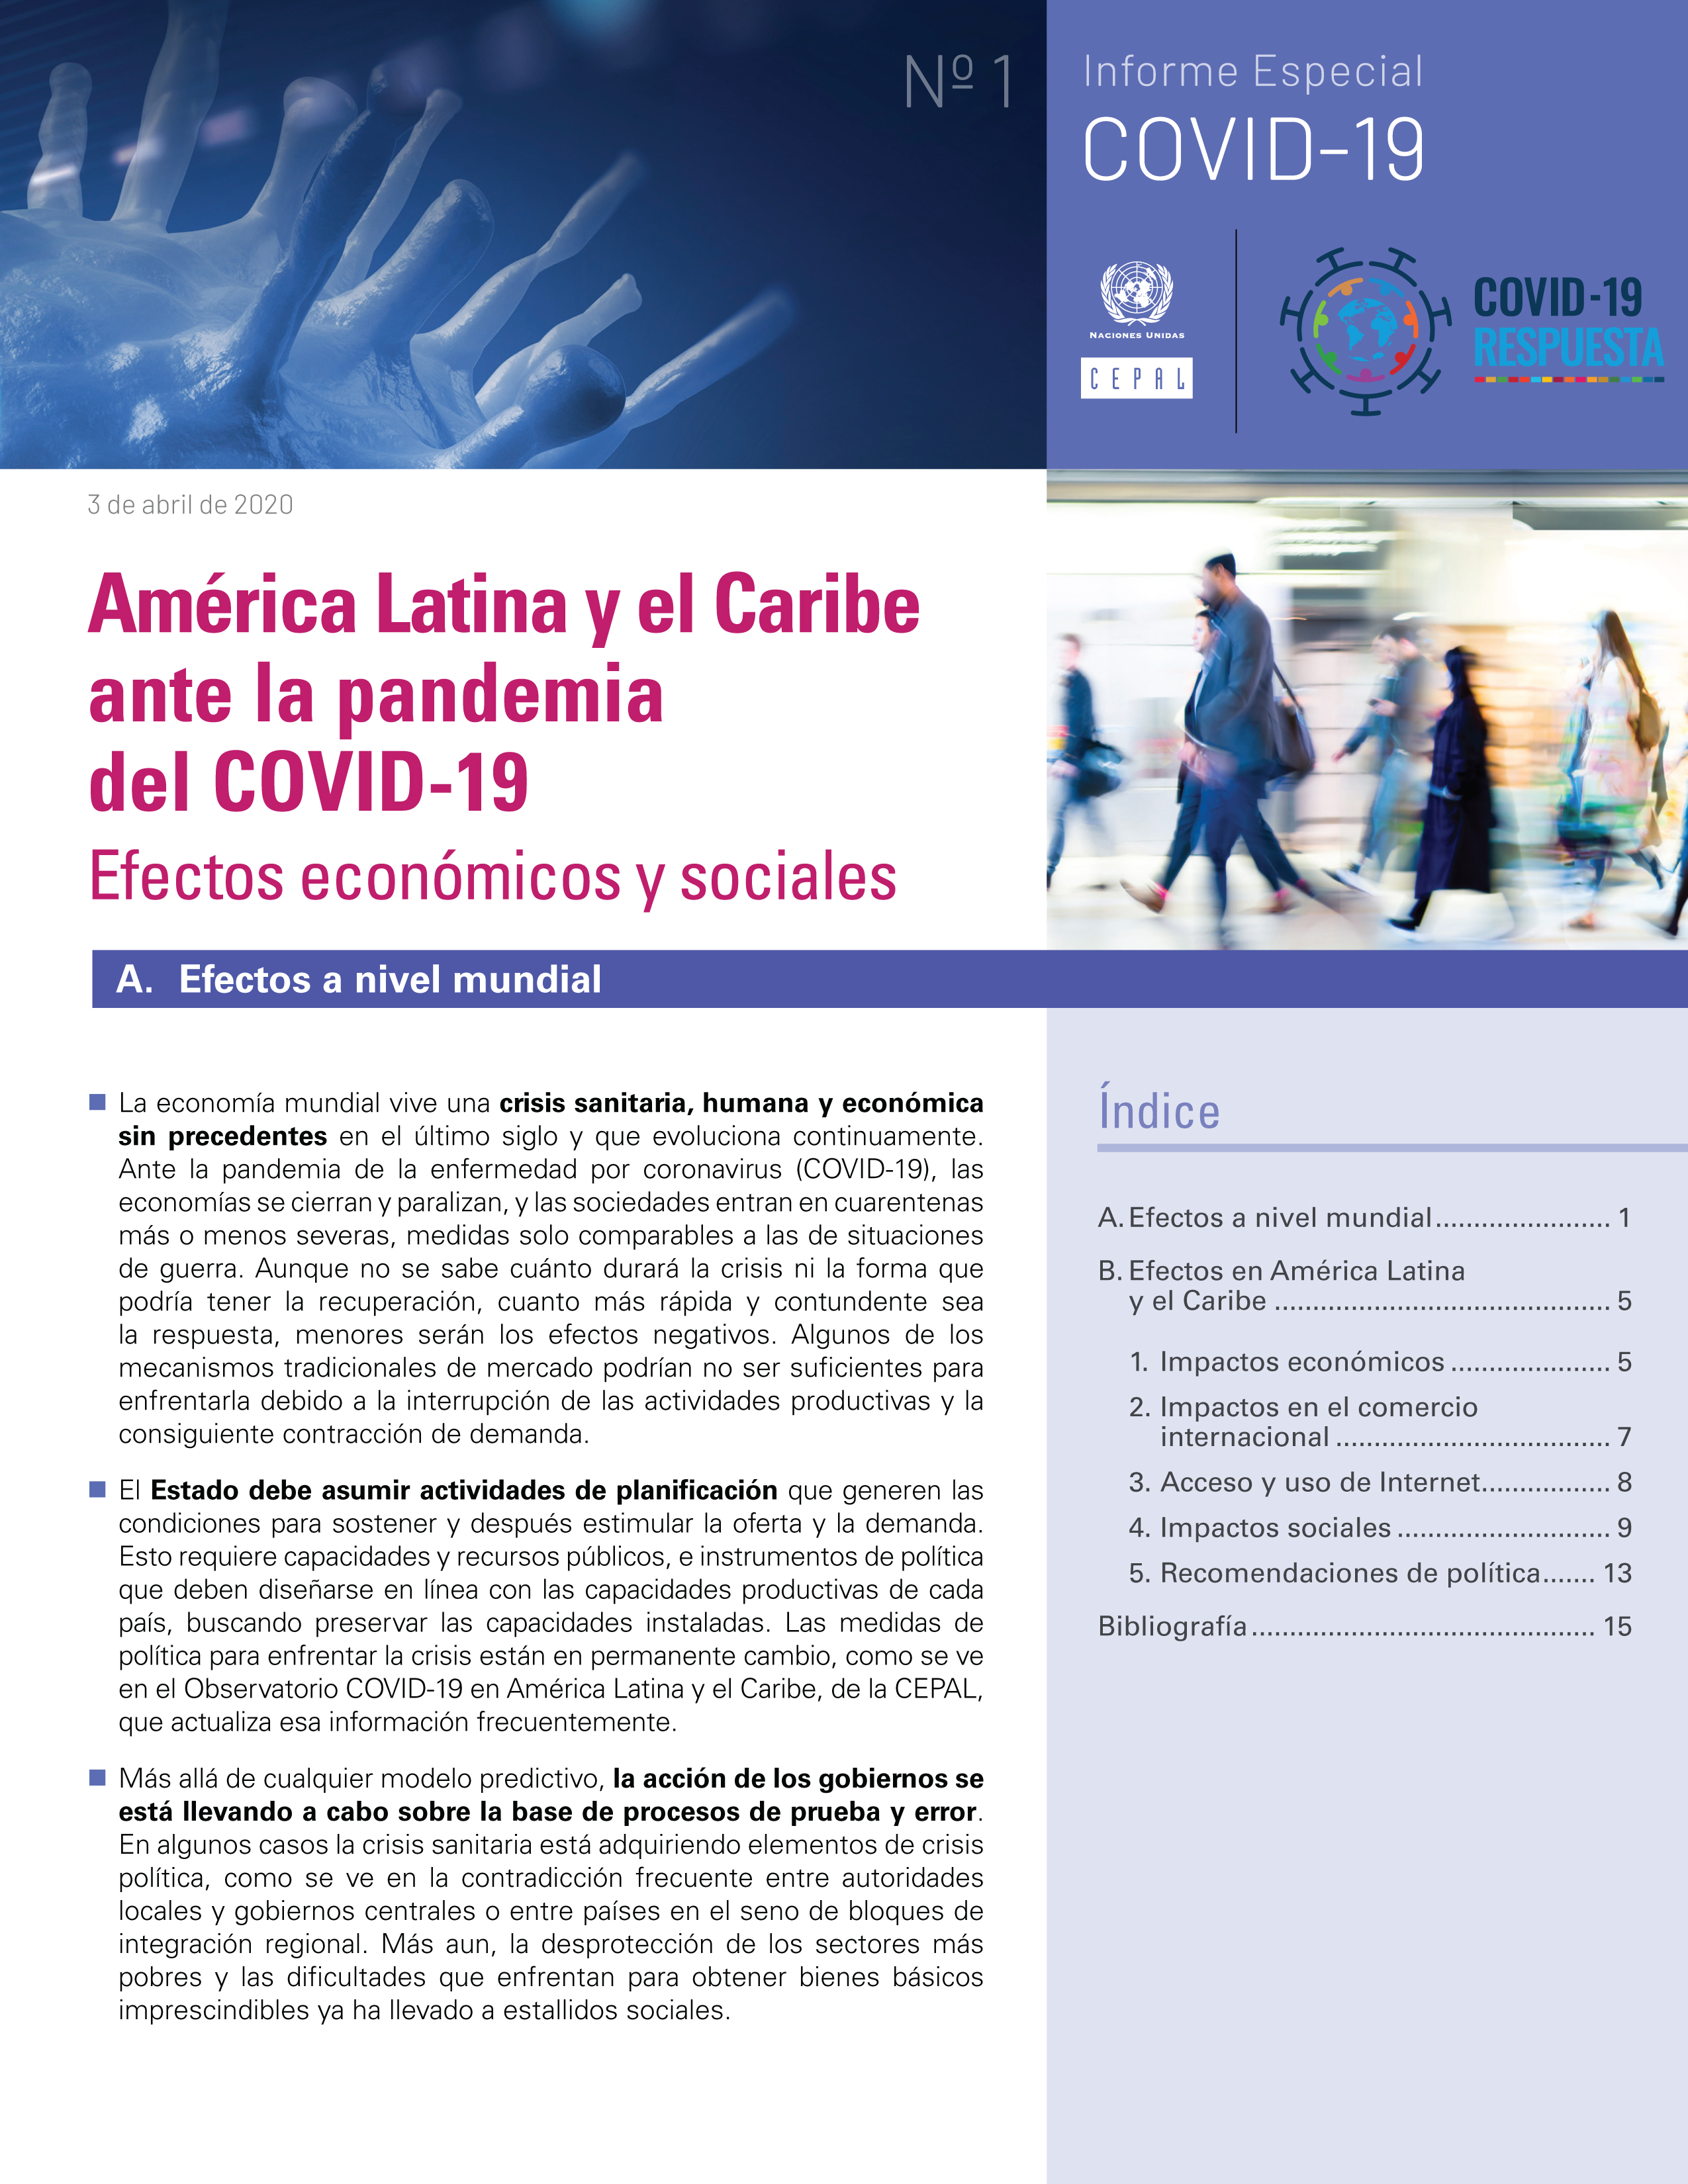 image of América Latina y el Caribe ante la pandemia del COVID-19: Efectos económicos y sociales